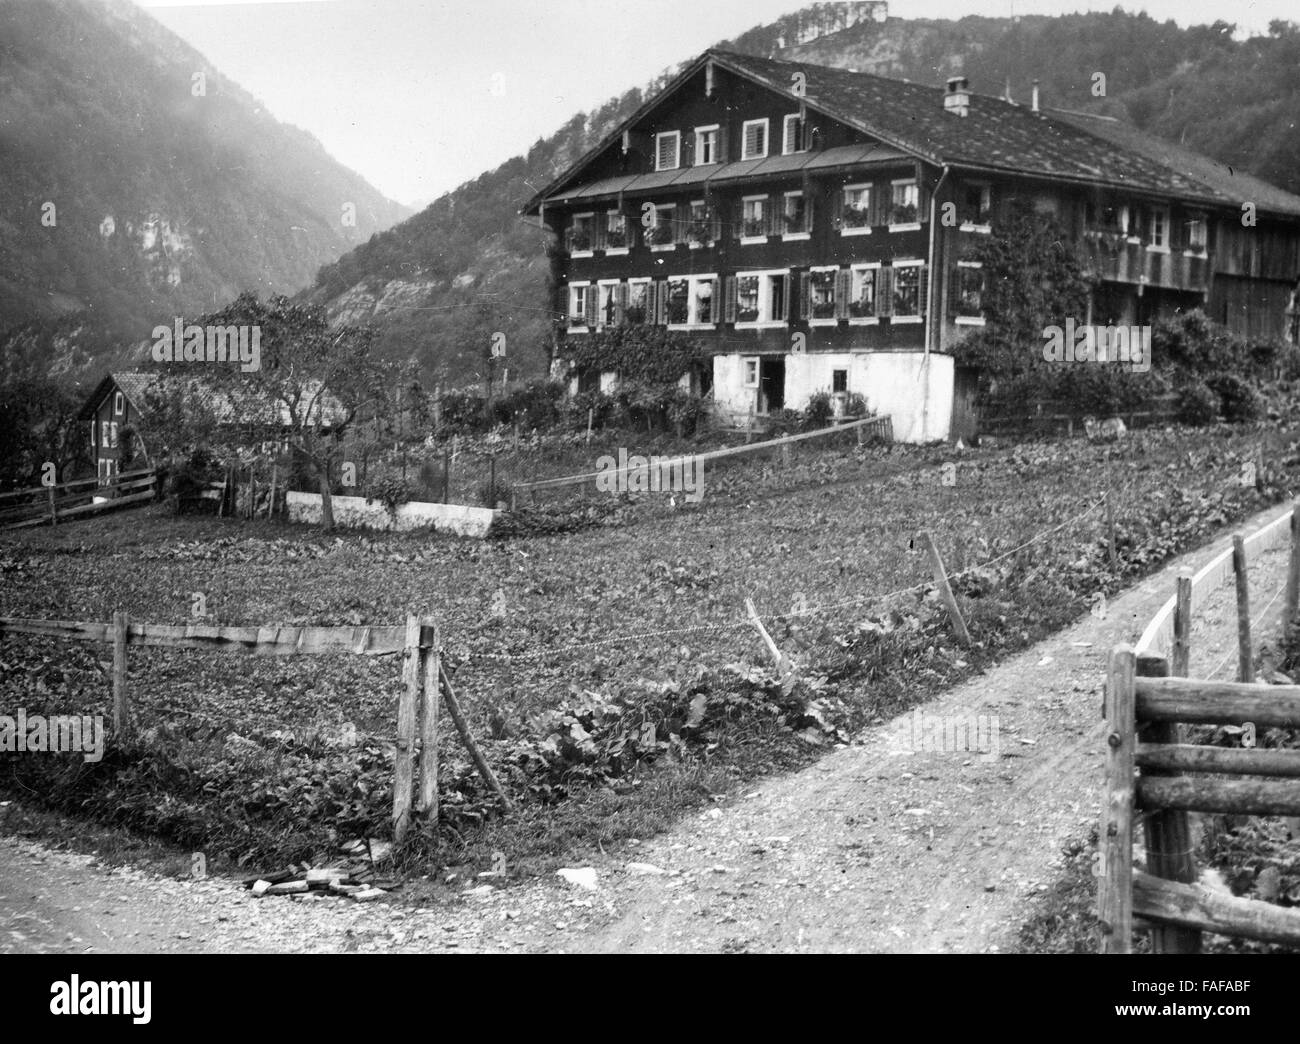 Dans Bergbauernhaus Seelisberg im Kanton Uri, Schweiz 1930er Jahre. Maison de ferme de montagne à Seelisberg en Suisse canton d'Uri, 1930. Banque D'Images